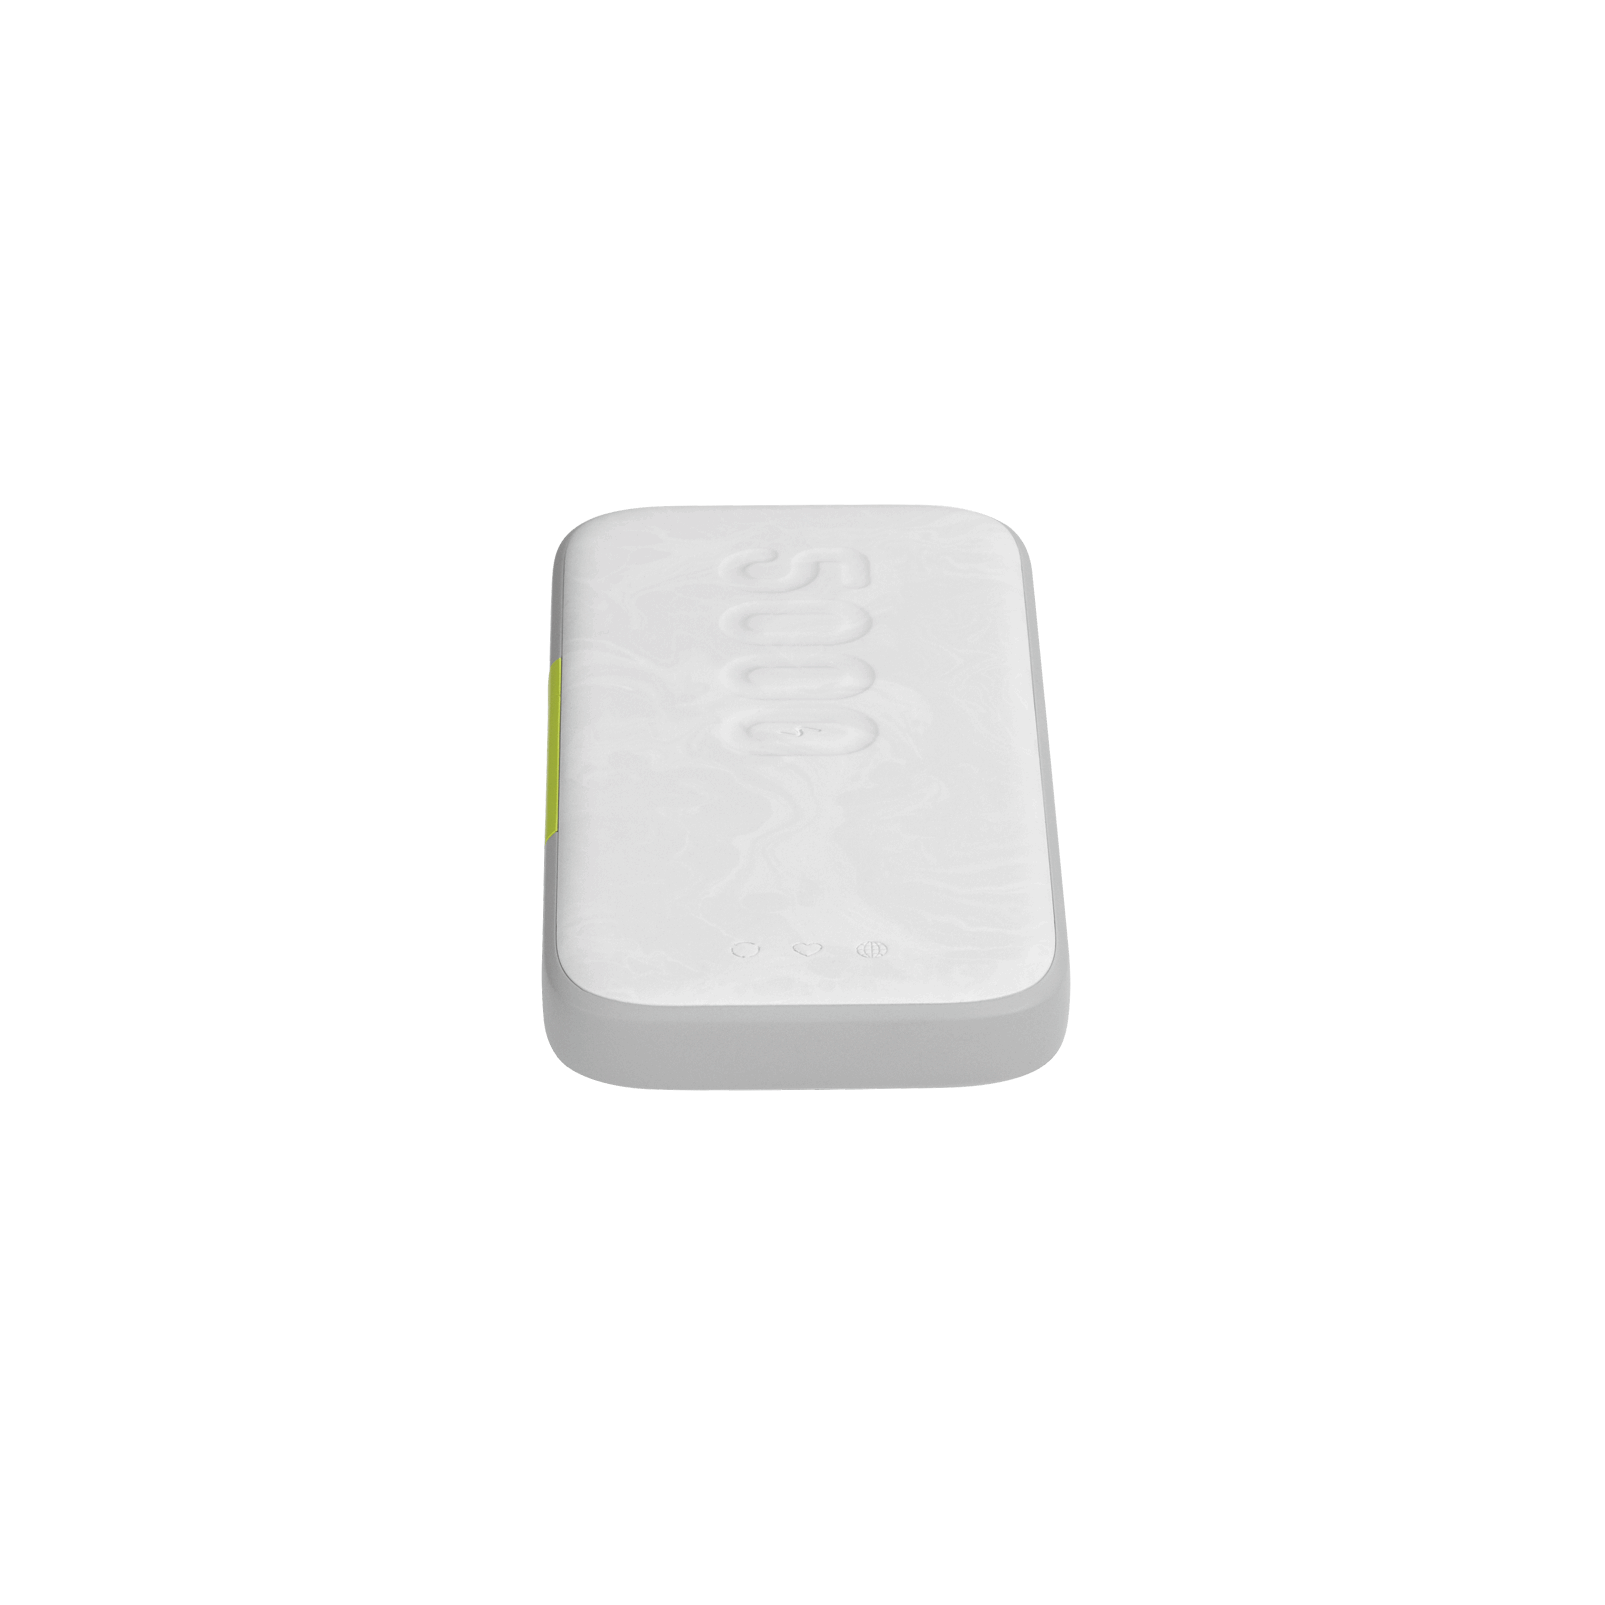 InstantGo 5000 wireless